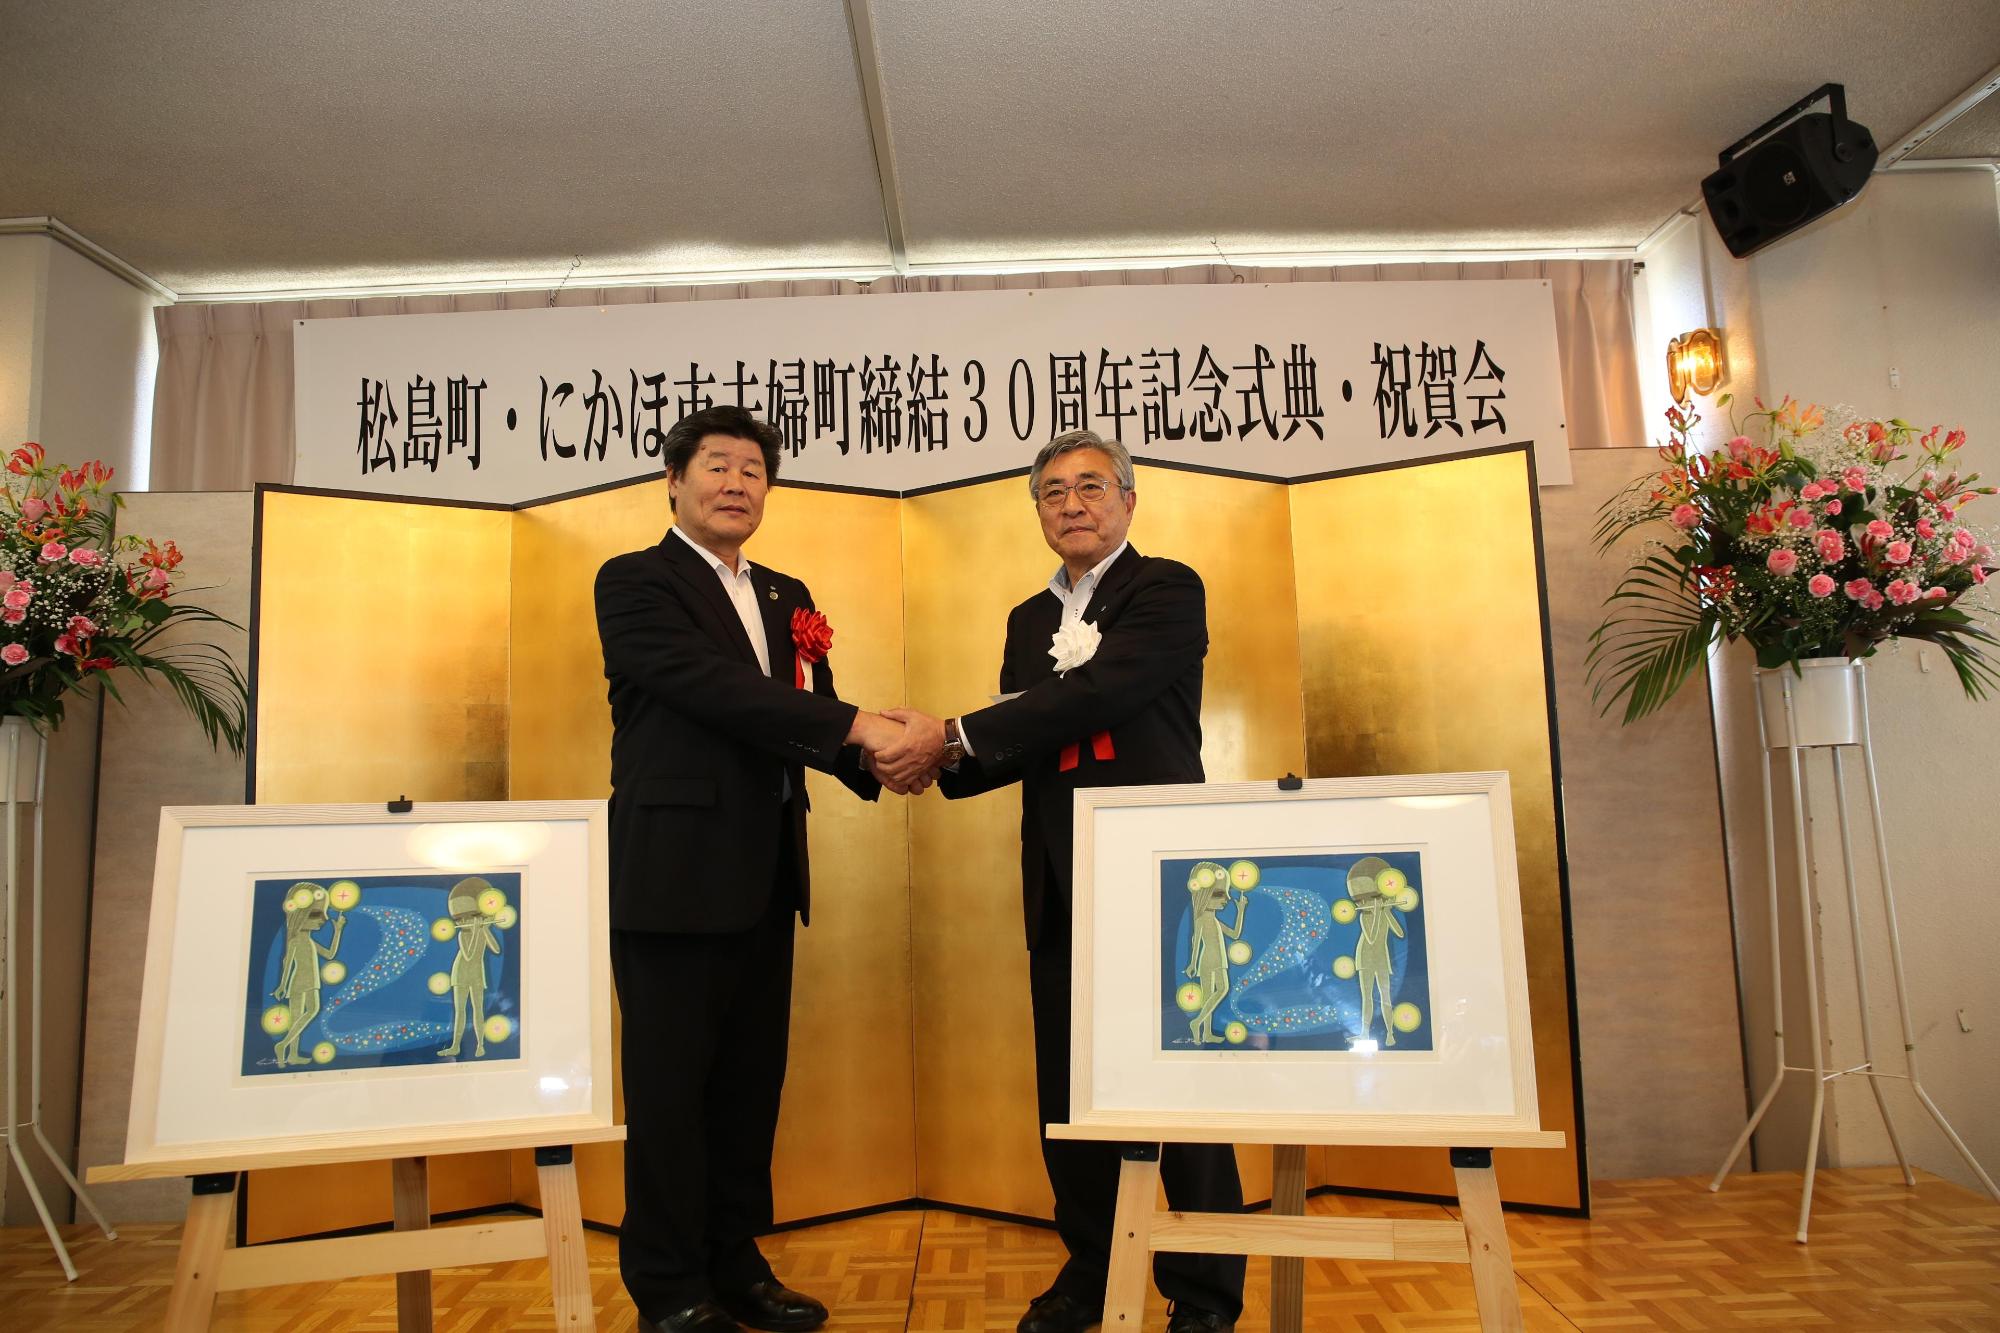 「松島町・にかほ市夫婦町締結30周年記念式典・祝賀会」と書かれた横断幕と金屏風をバックに、2人のスーツ姿の男性が両手で握手をしている写真